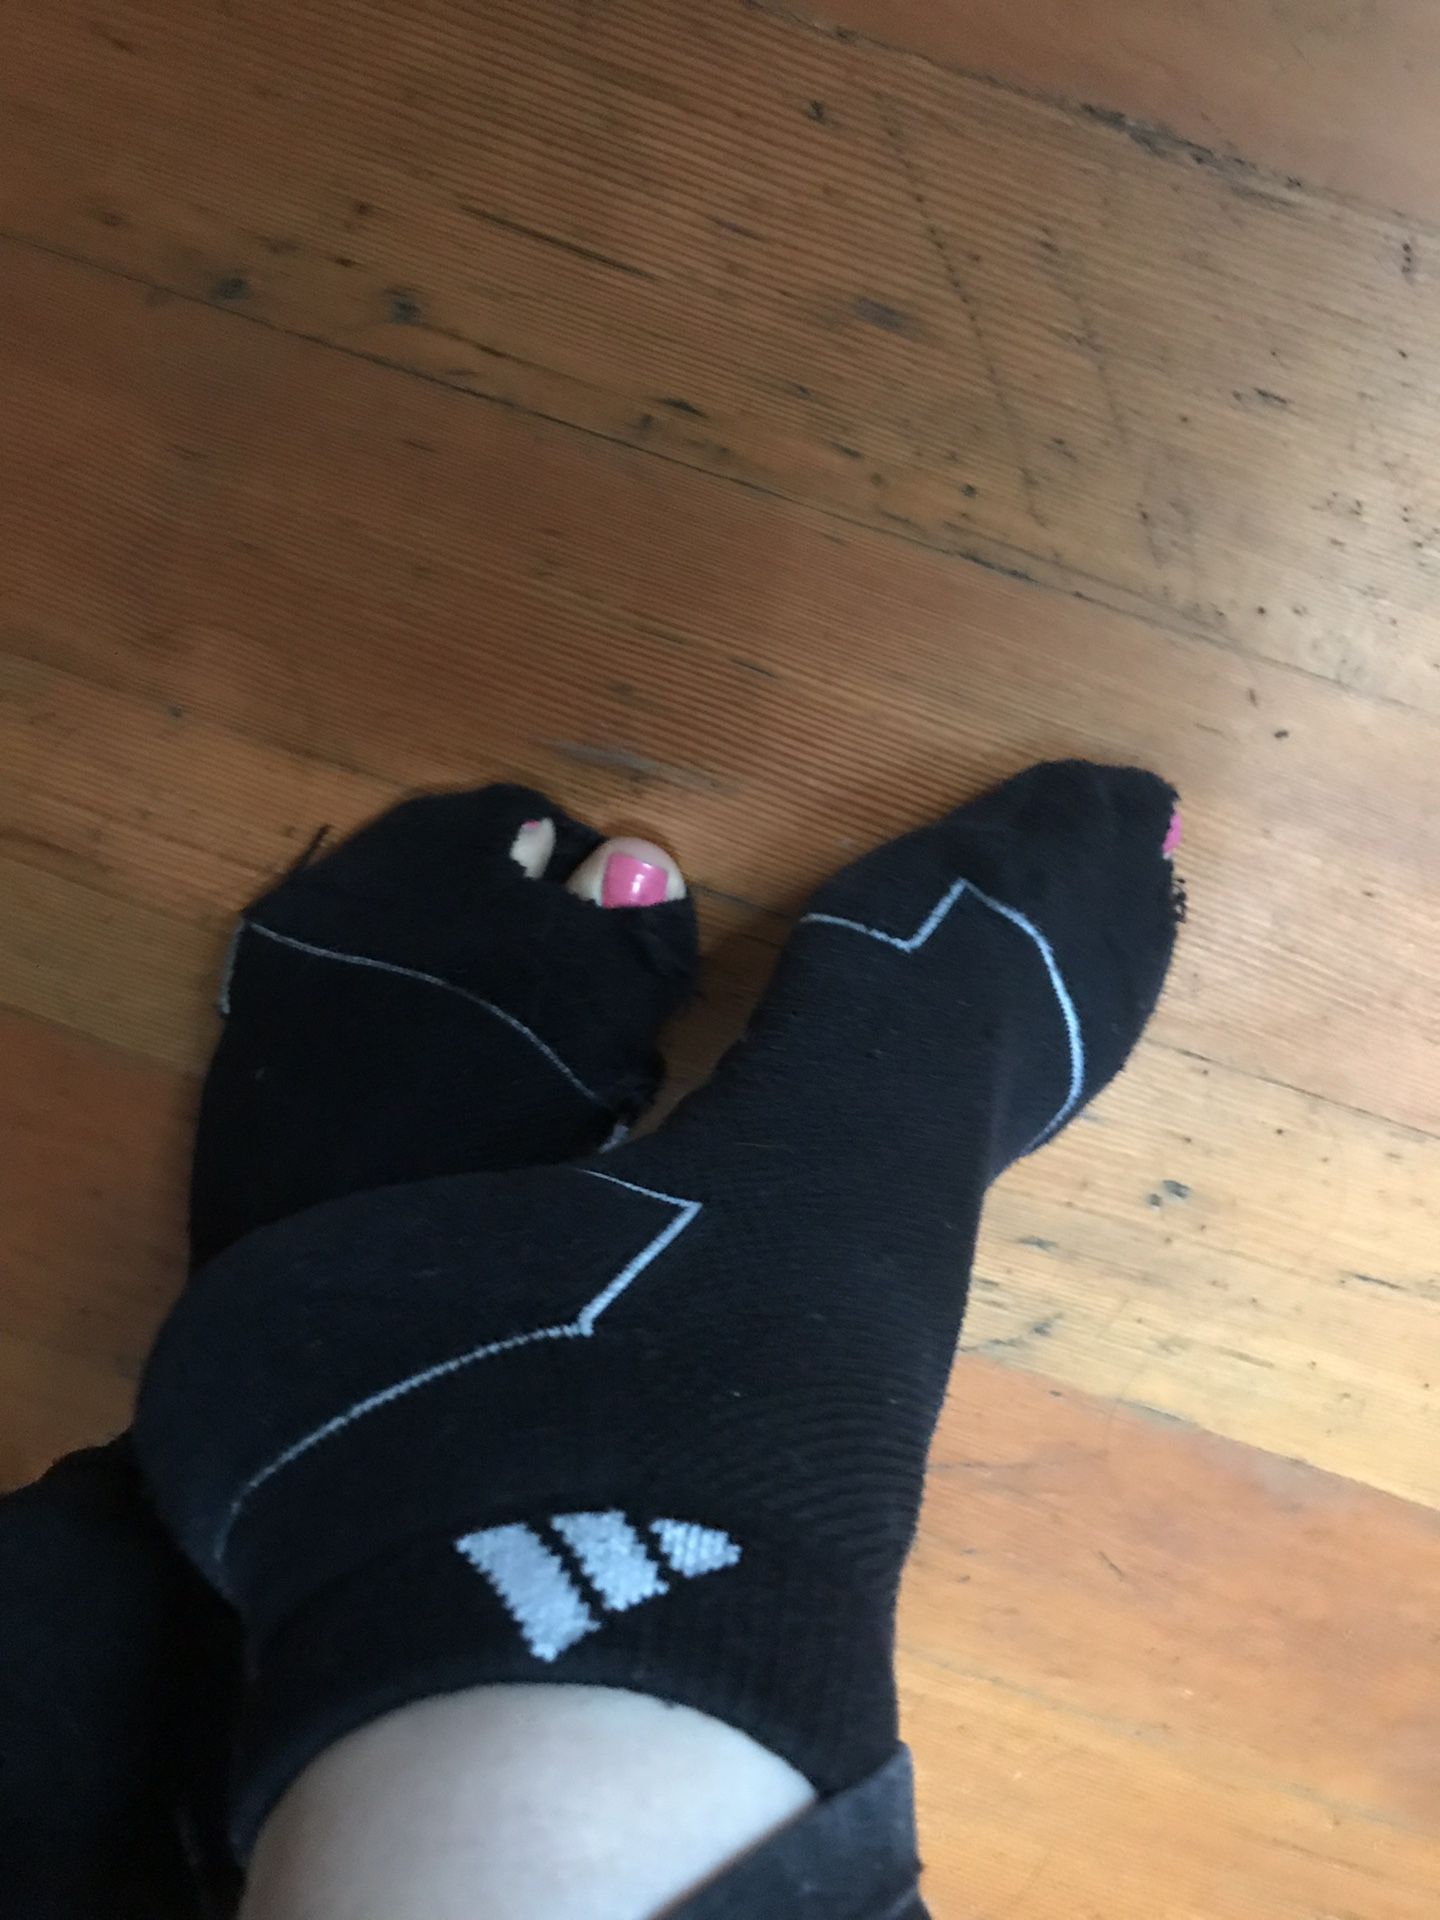 Preowned women’s socks